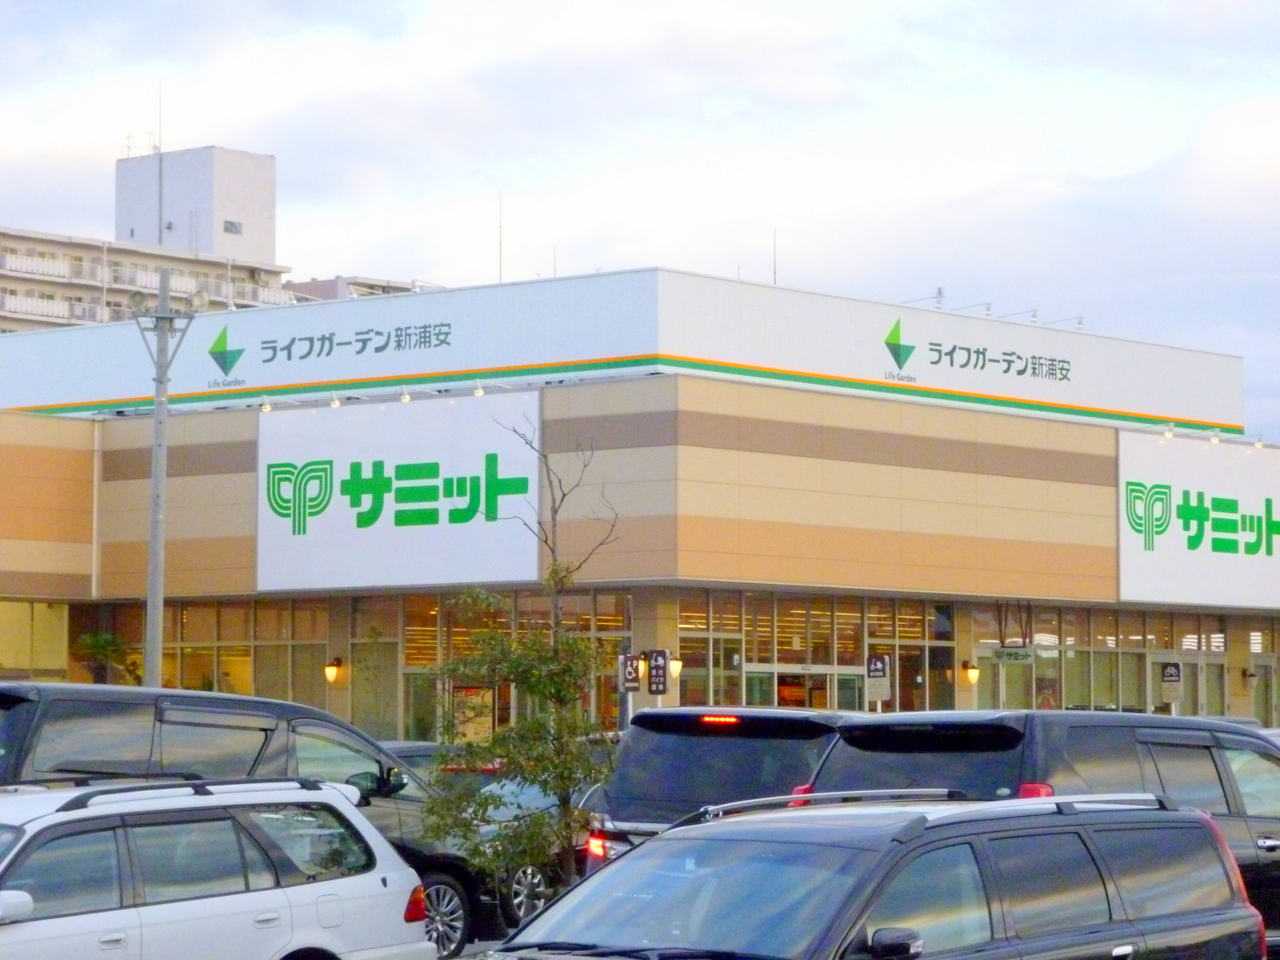 Shopping centre. 1058m to Life Garden Shin-Urayasu (shopping center)